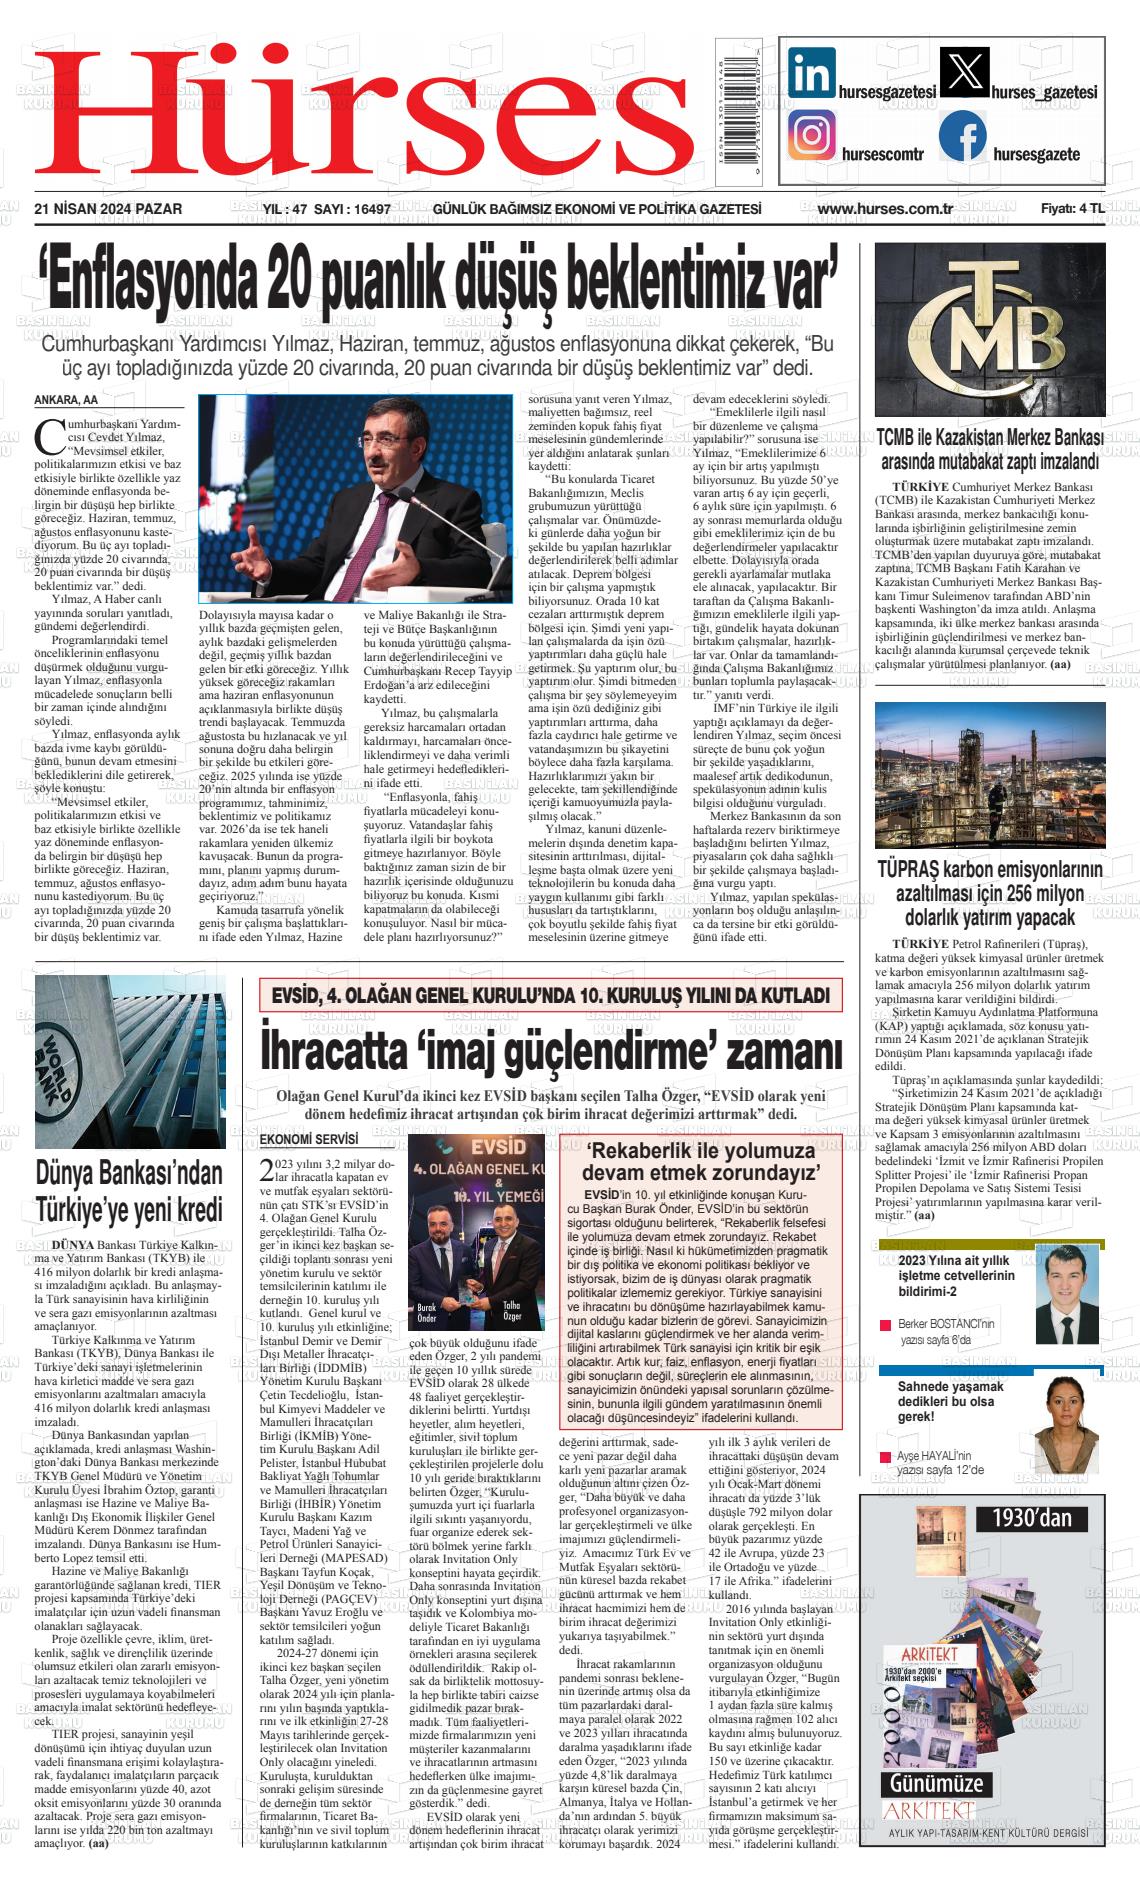 25 Nisan 2024 İstanbul Hürses gazetesi Gazete Manşeti